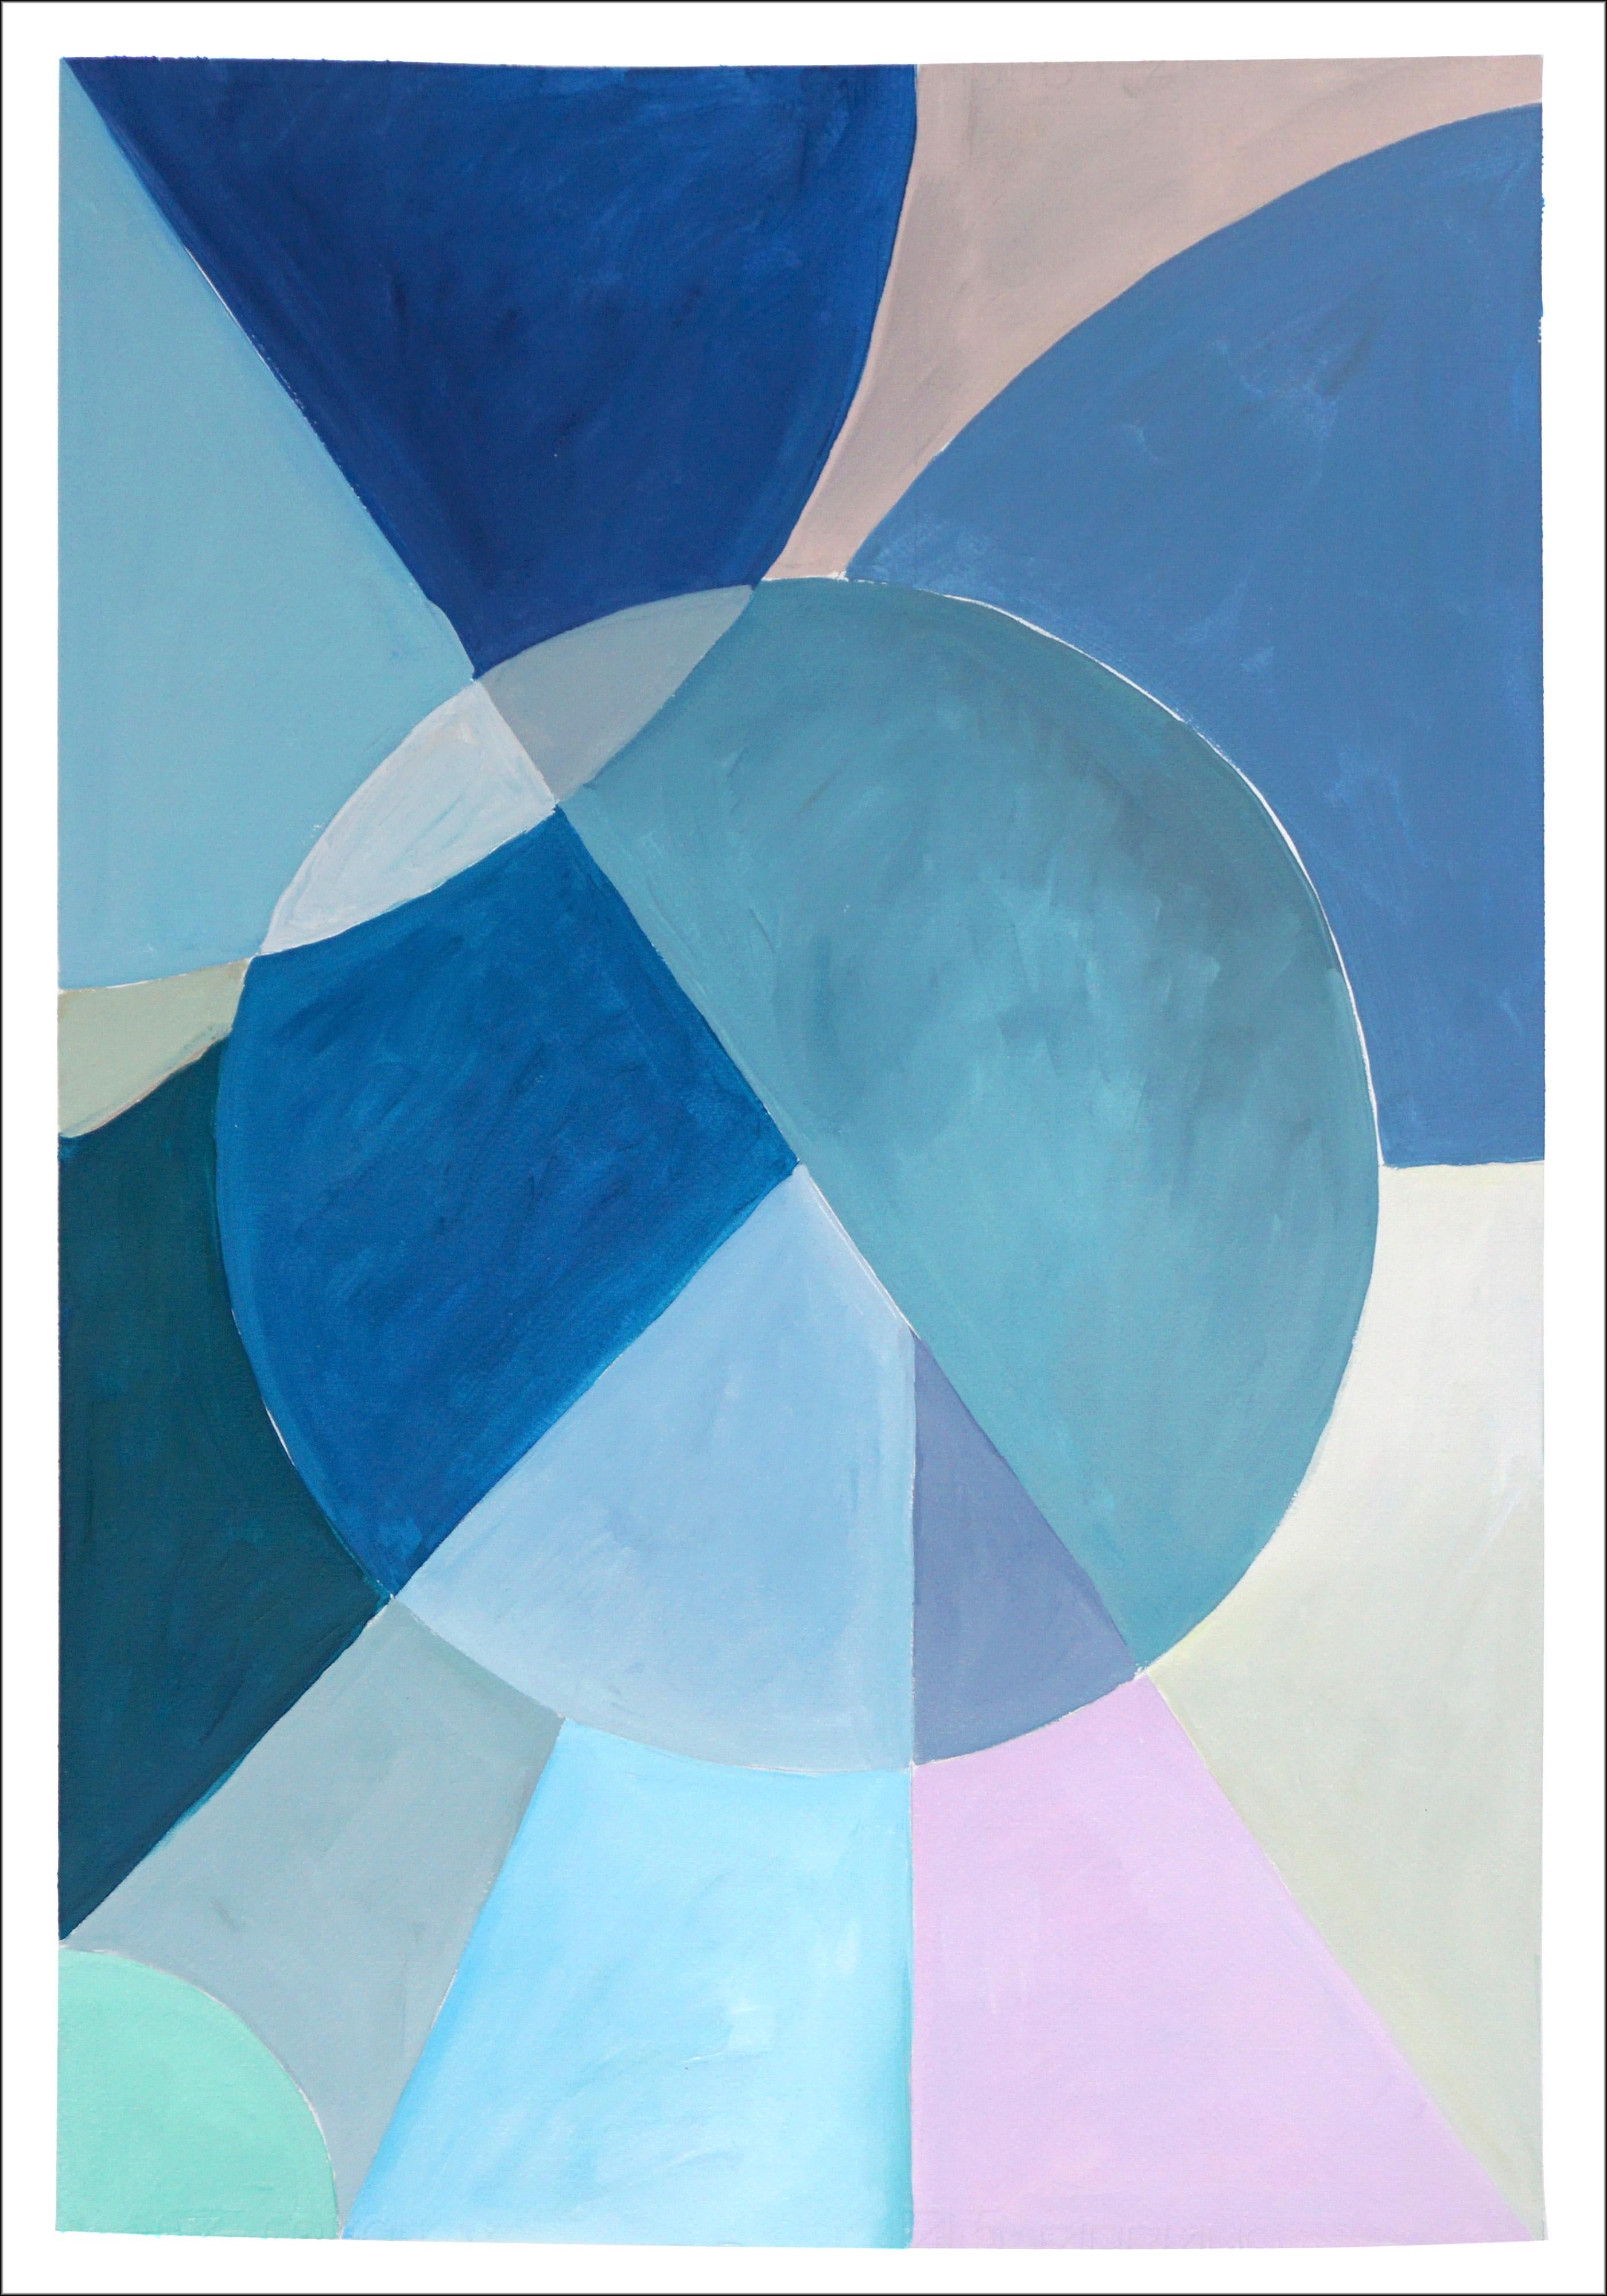 Ces séries de peintures de Natalia Roman s'inspirent des formes géométriques et minimalistes et des peintures du début du modernisme, avec un enthousiasme particulier pour les dessins d'astronomie et de mathématiques. Les combinaisons de couleurs